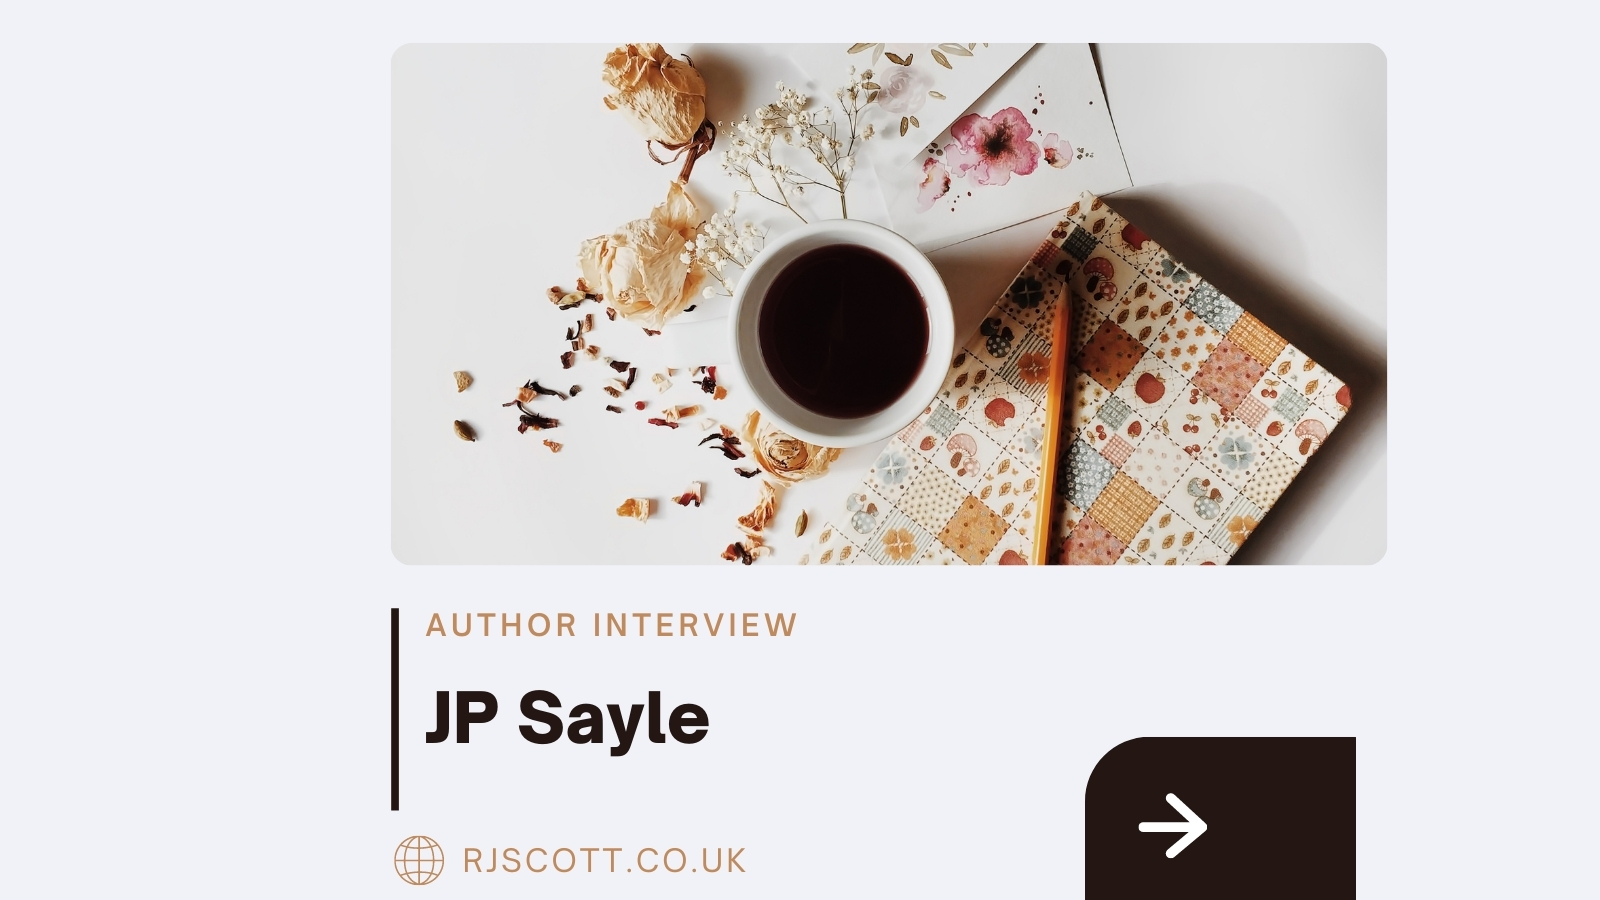 JP Sayle MM Romance author interview with RJ Scott MM Romance author